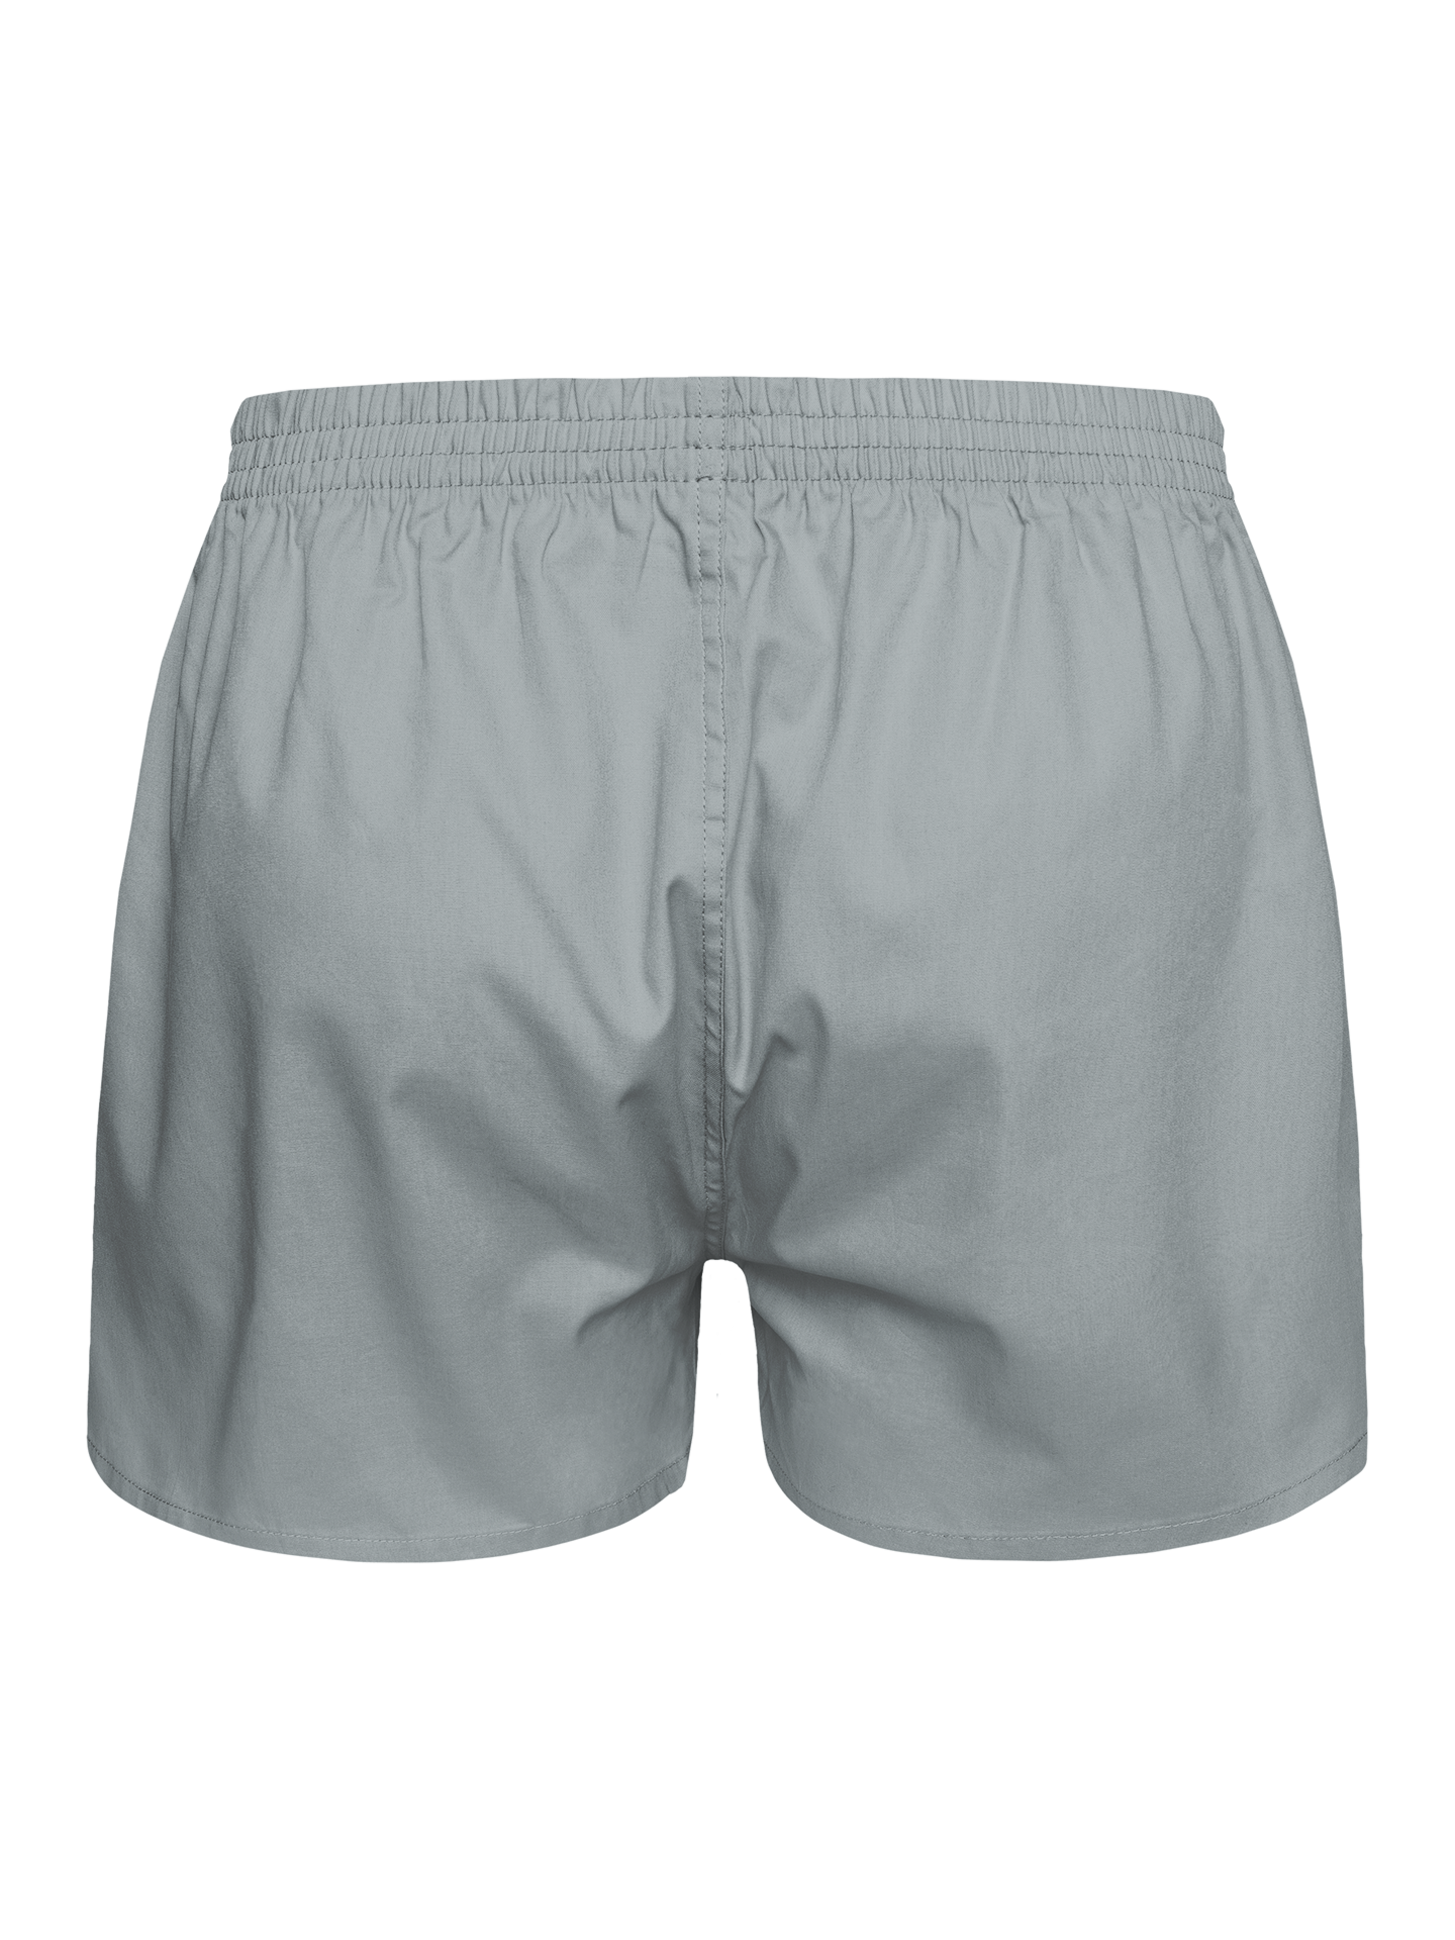 Short Pant Grey Free PNG